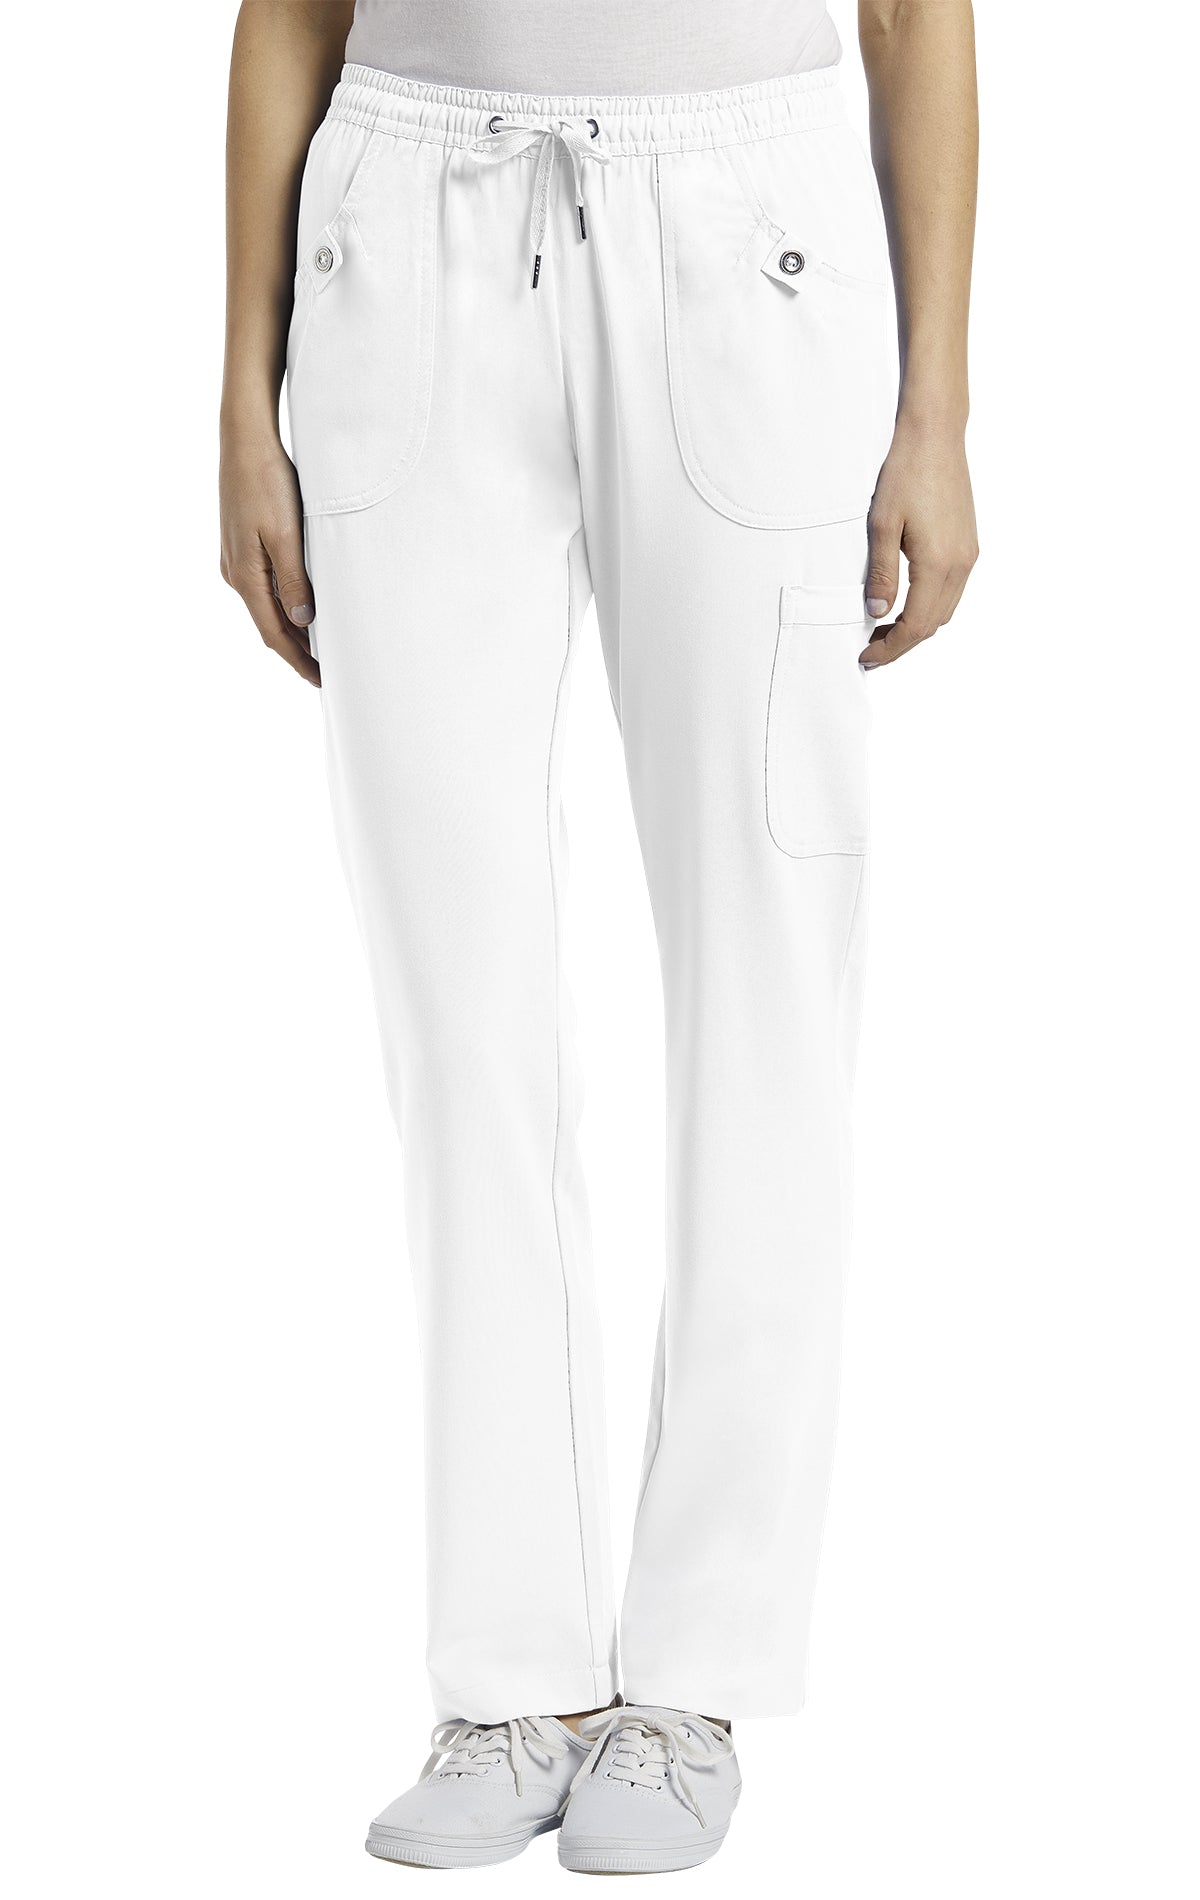 Pantalon de travail Marvella White Cross #309 blanc